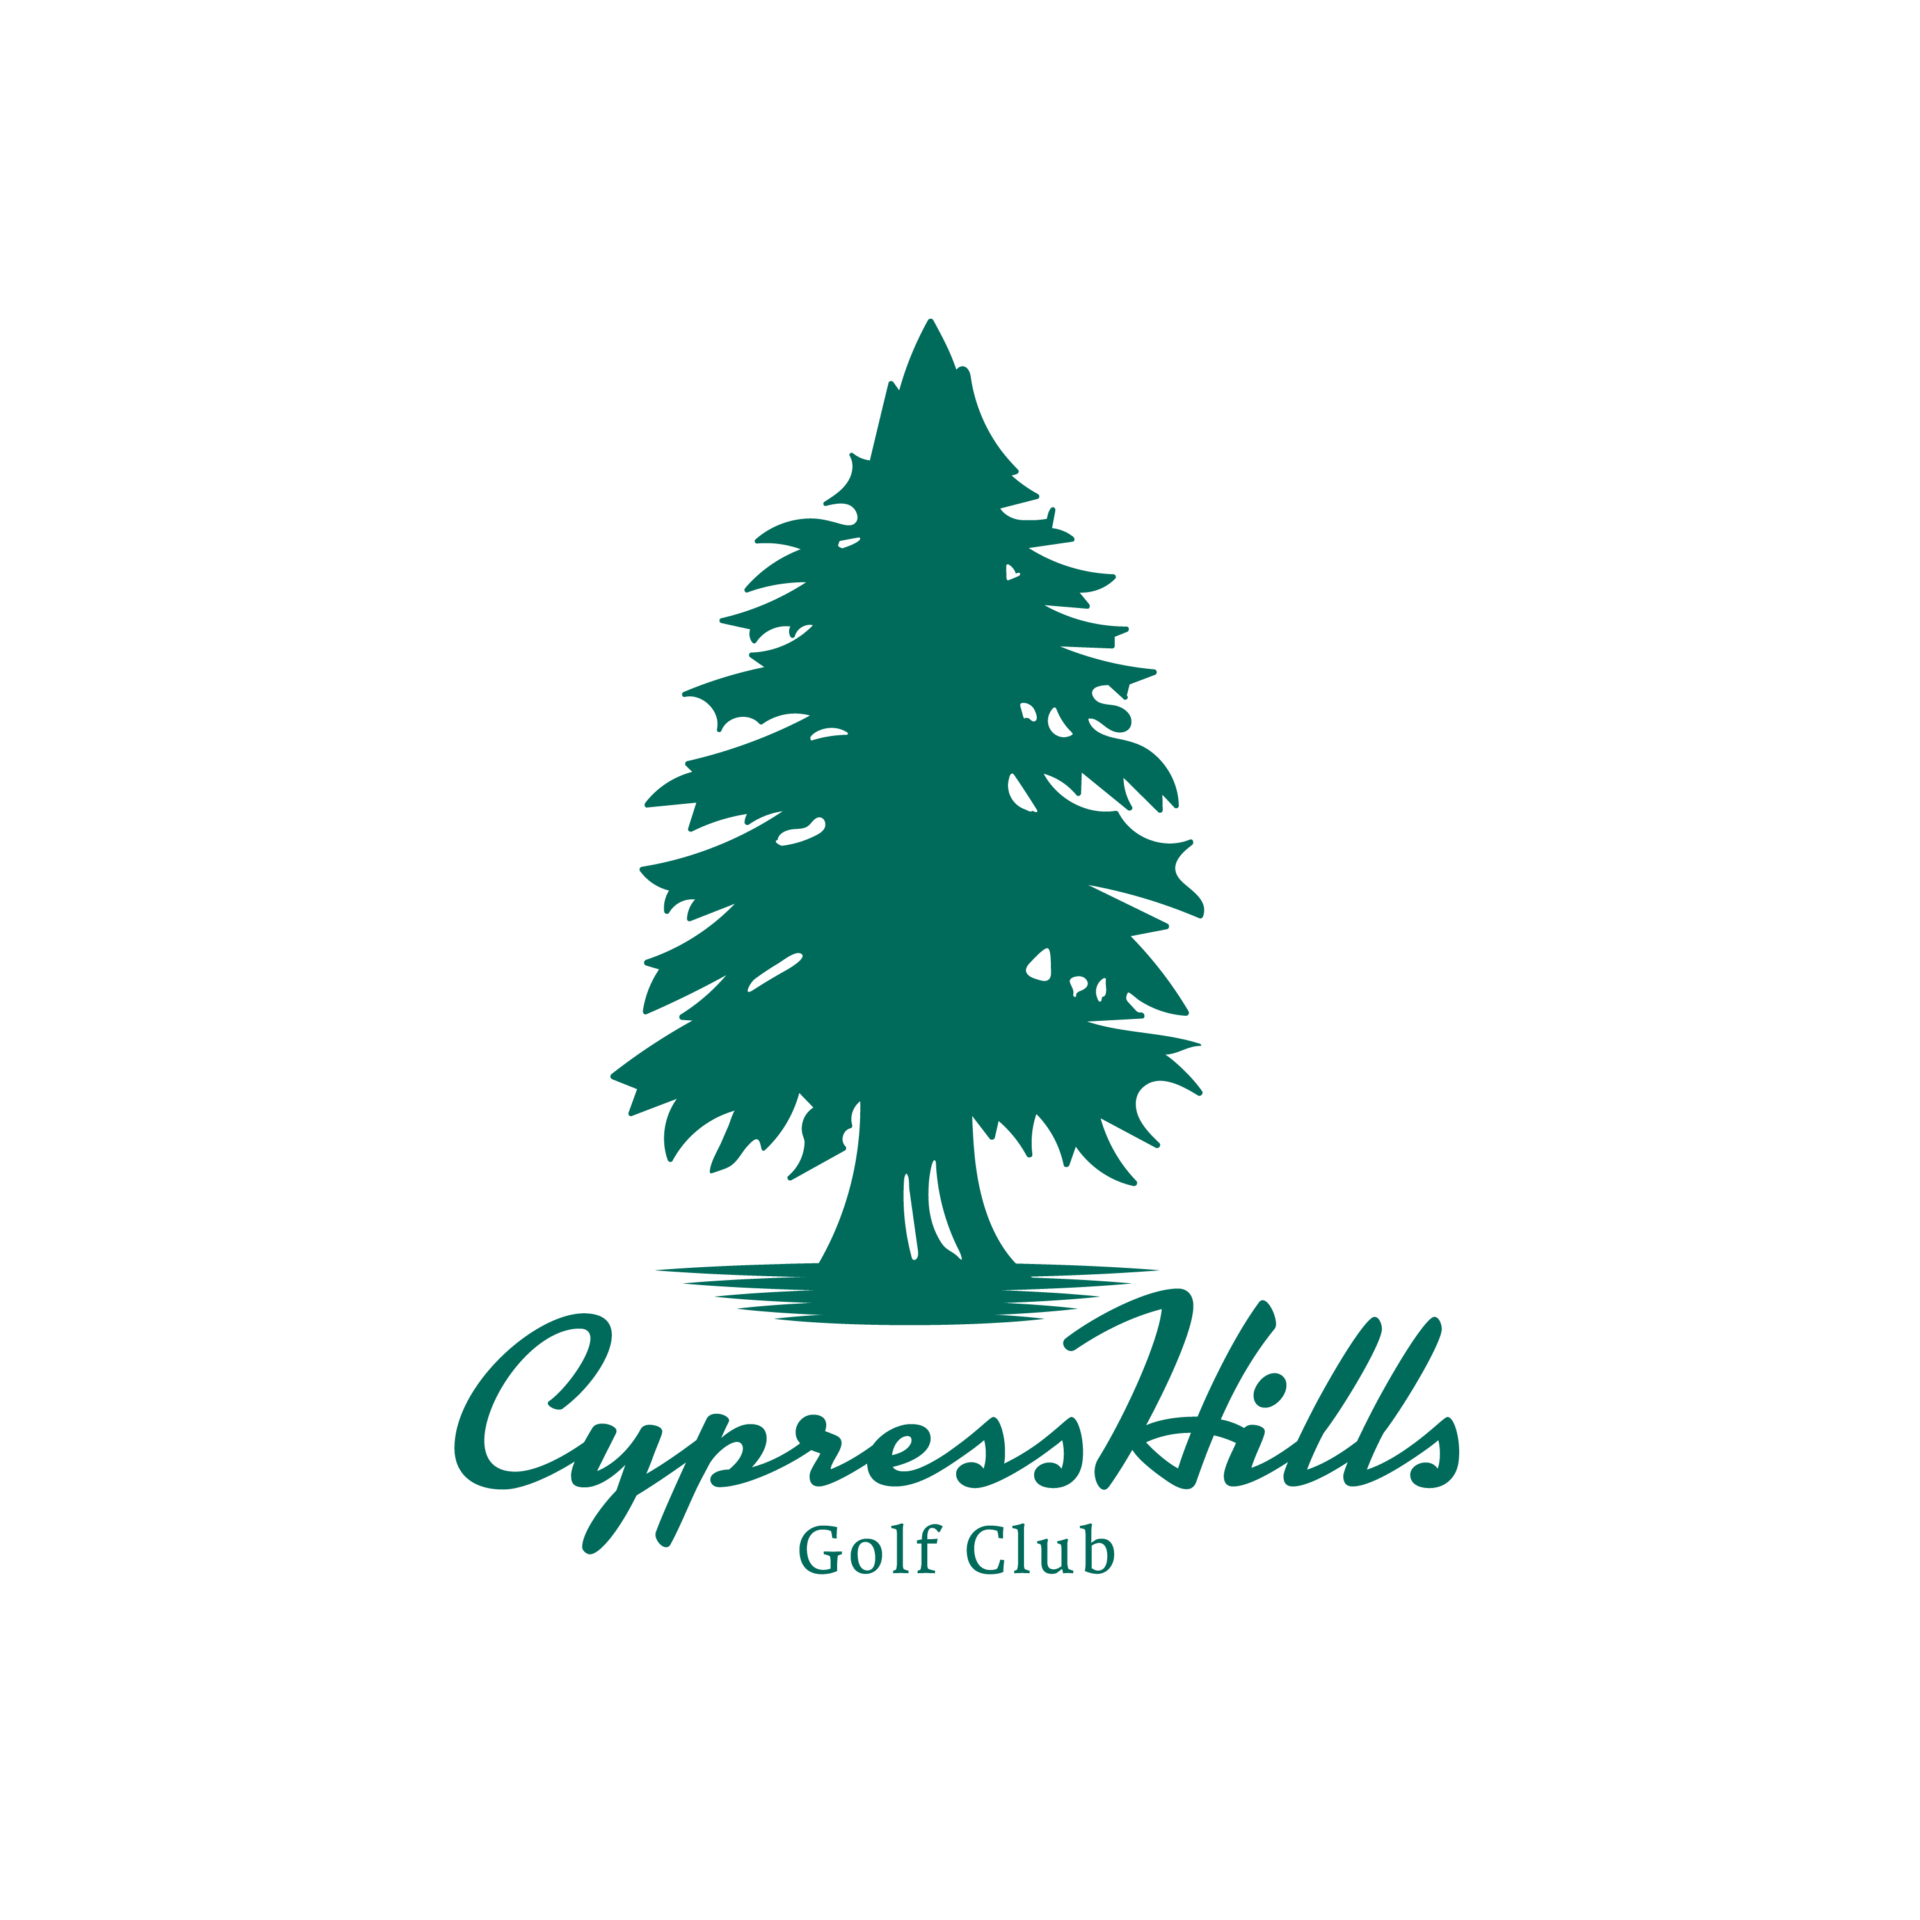 Cypress Hills Golf Club